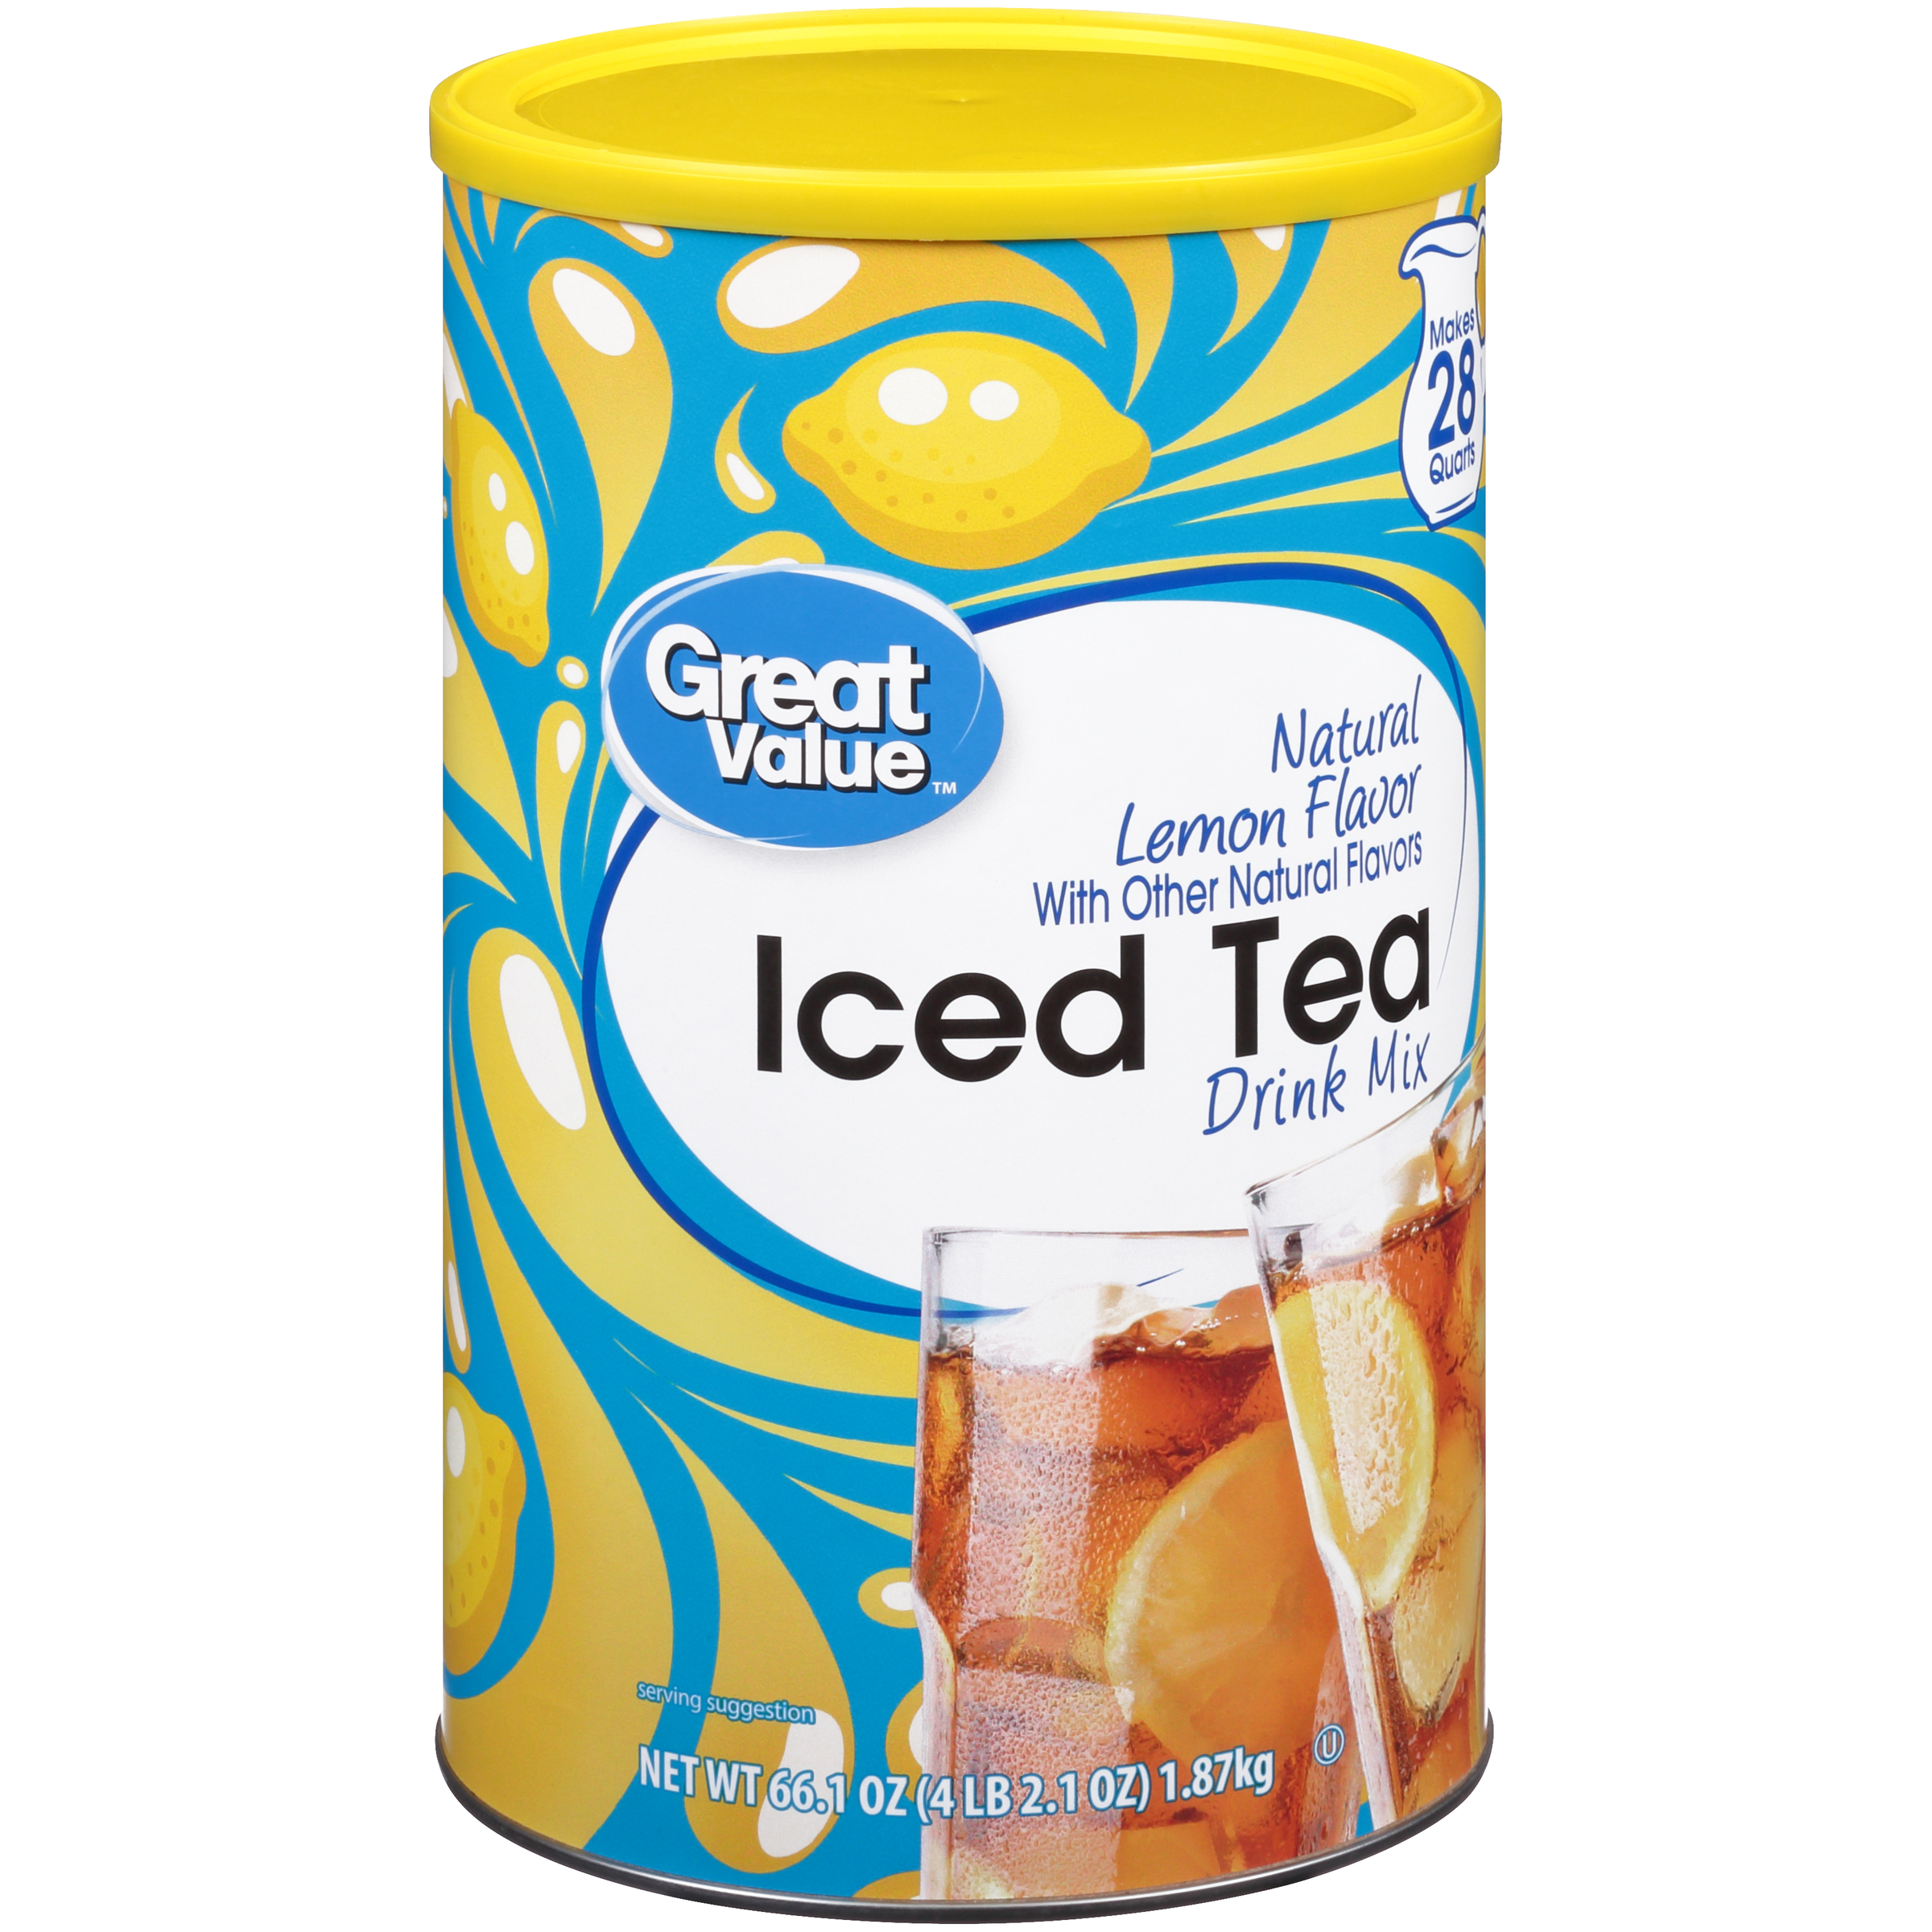 Great Value Natural Lemon Flavor Iced Tea Drink Mix, 66.1 oz - image 2 of 12